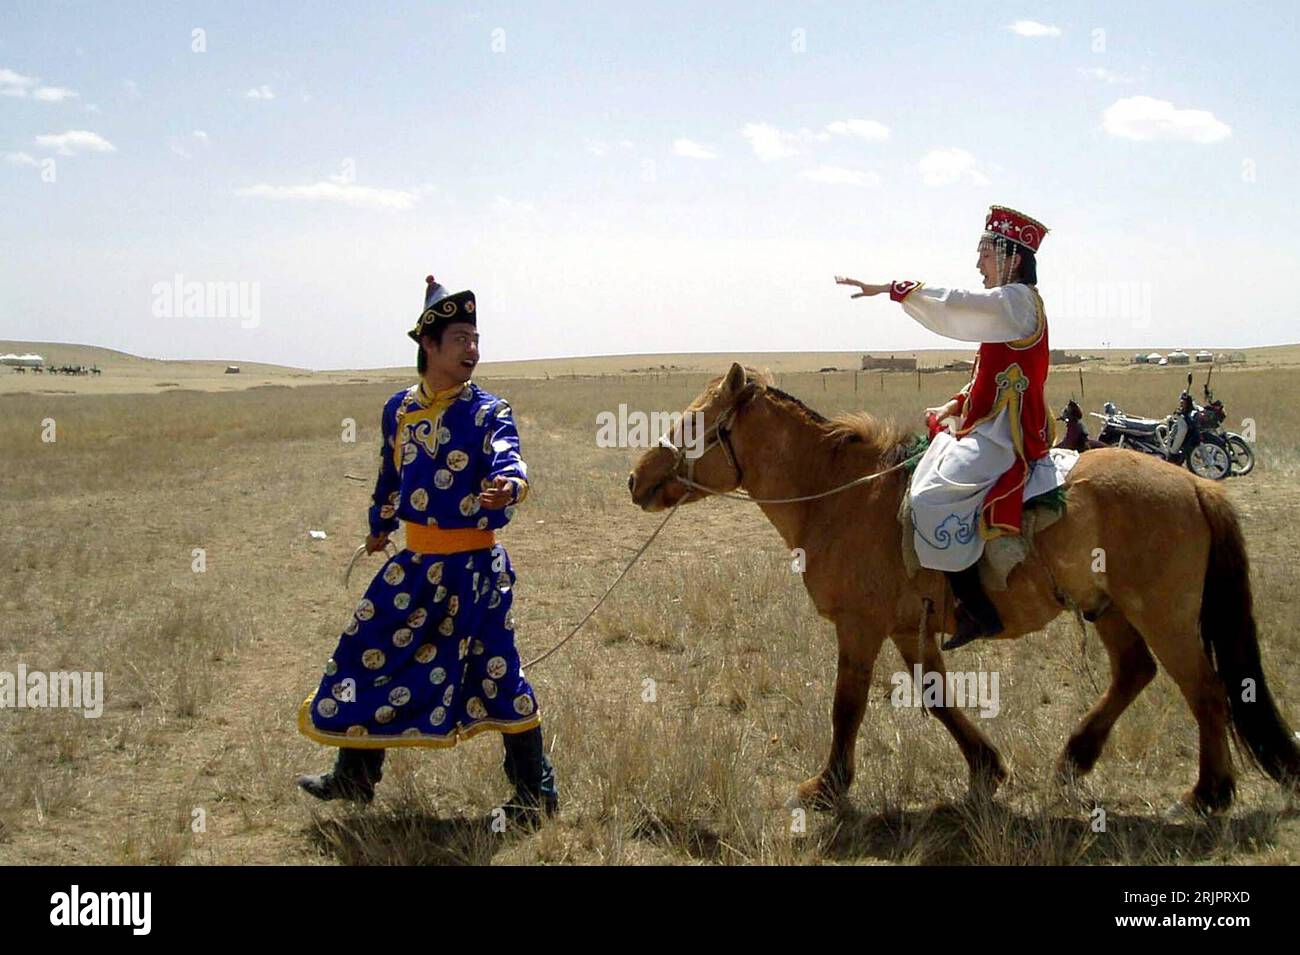 Bildnummer: 51230724 Datum: 06.05.2006 Copyright: imago/Xinhua Touristen in mongolischer Bekleidung mit einem Pferd in der Steppe bei Hohhot - PUBLICATIONxNOTxINxCHN, Personen , Tiere, optimistisch; 2006, Hohhot, Tourist, mongolisch, mongolisch, Pferde, Tourist, Mann, Männer, Land, Leute , Chinesisch, Chinesen, Chinesisch, chinesisch, Verkleidung, kostümiert, kostümierter, kostümiert, verkleidet, verkleideter, verkleidete; , quer, Kbdig, Gruppenbild, Seitenansicht, Perspektive, China, Säugetiere Stockfoto